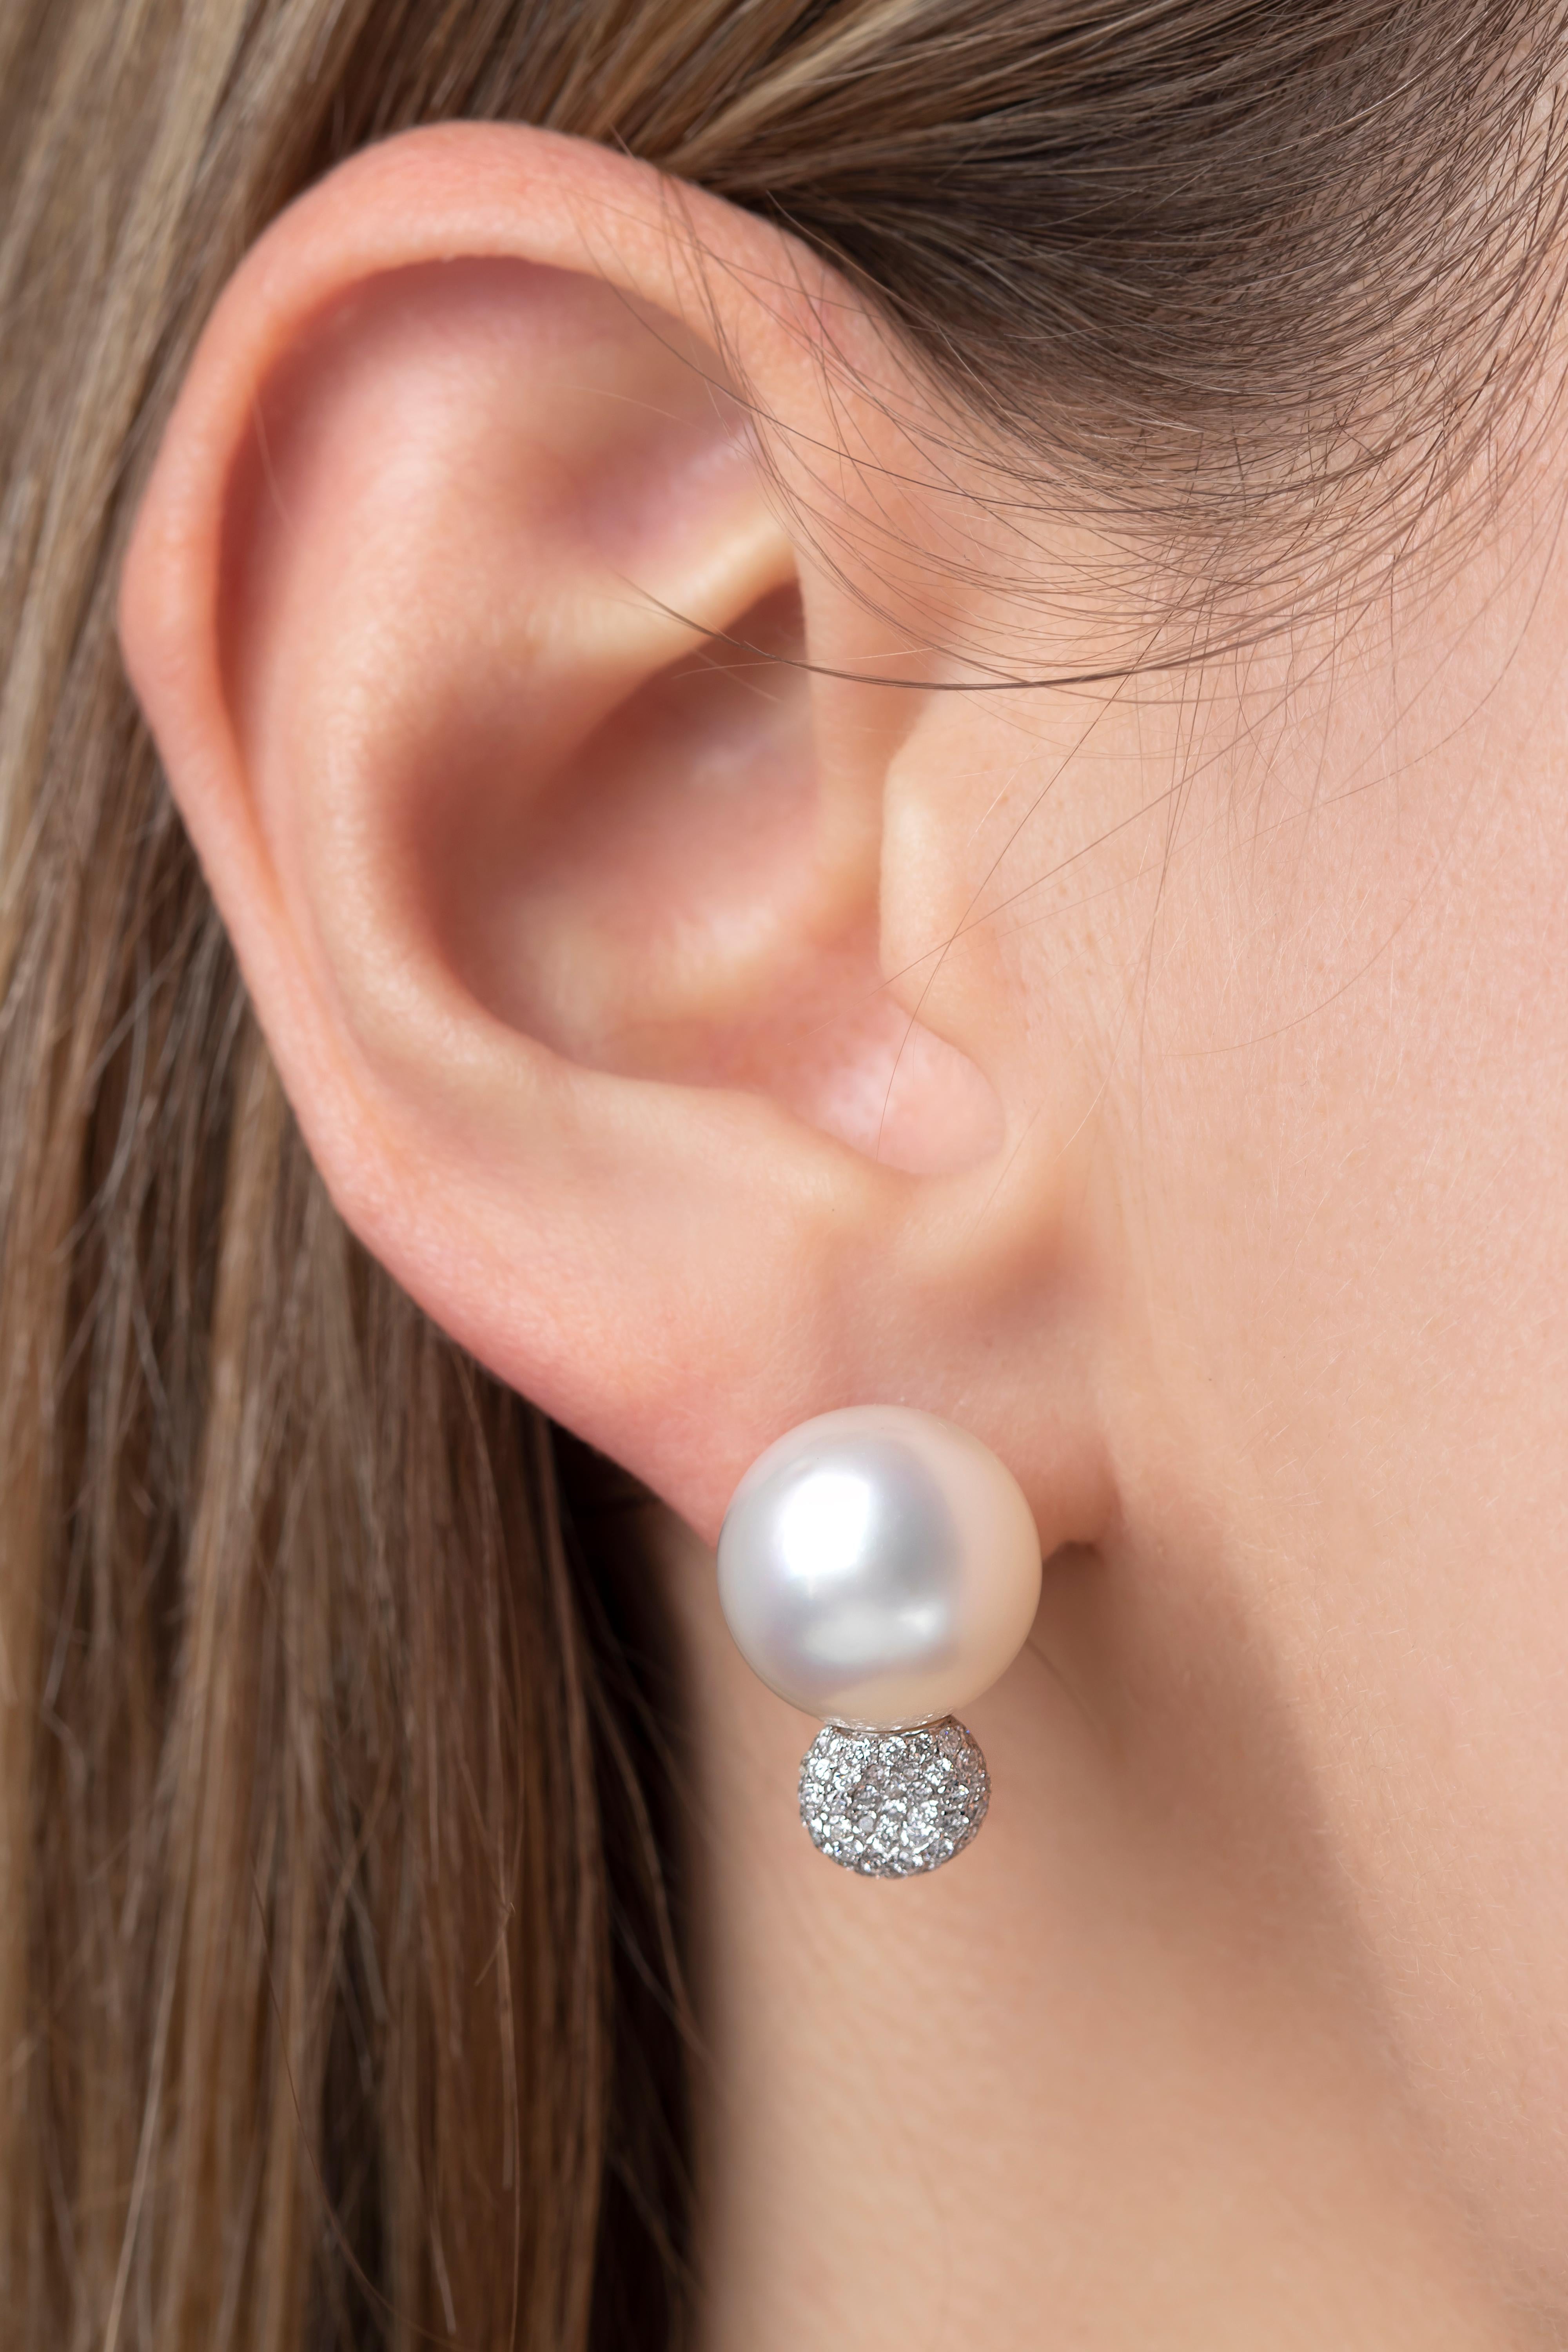 Diese eleganten Ohrringe von Yoko London sind mit glänzenden Südseeperlen und einem Cluster aus funkelnden Diamanten besetzt. Diese Ohrringe sind in 18 Karat Weißgold gefasst, um den Glanz der Perlen und der Diamanten zu verstärken. Sie sind eine